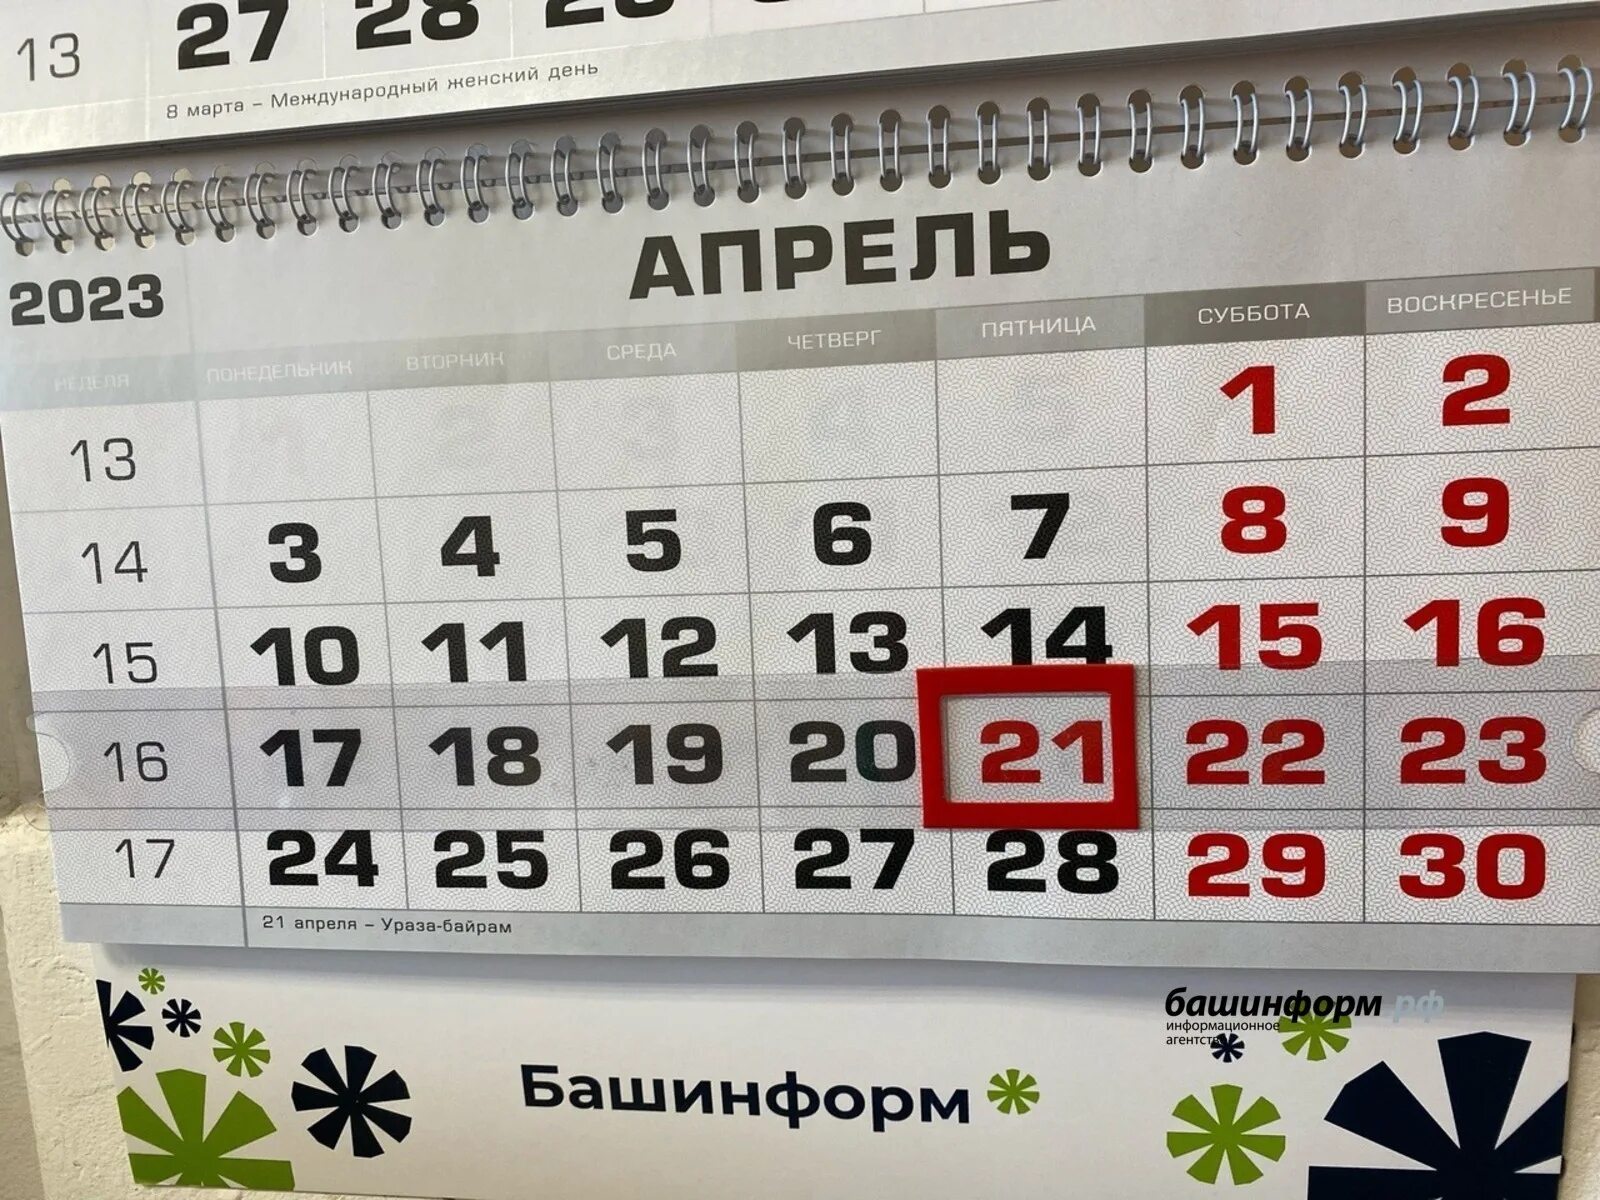 Праздники в апреле 2024 ураза. Праздники в апреле 2023 выходные. Выходные дни в апреле. Календарь апрельских праздников. Праздничные дни в апреле 2024 в Башкирии.